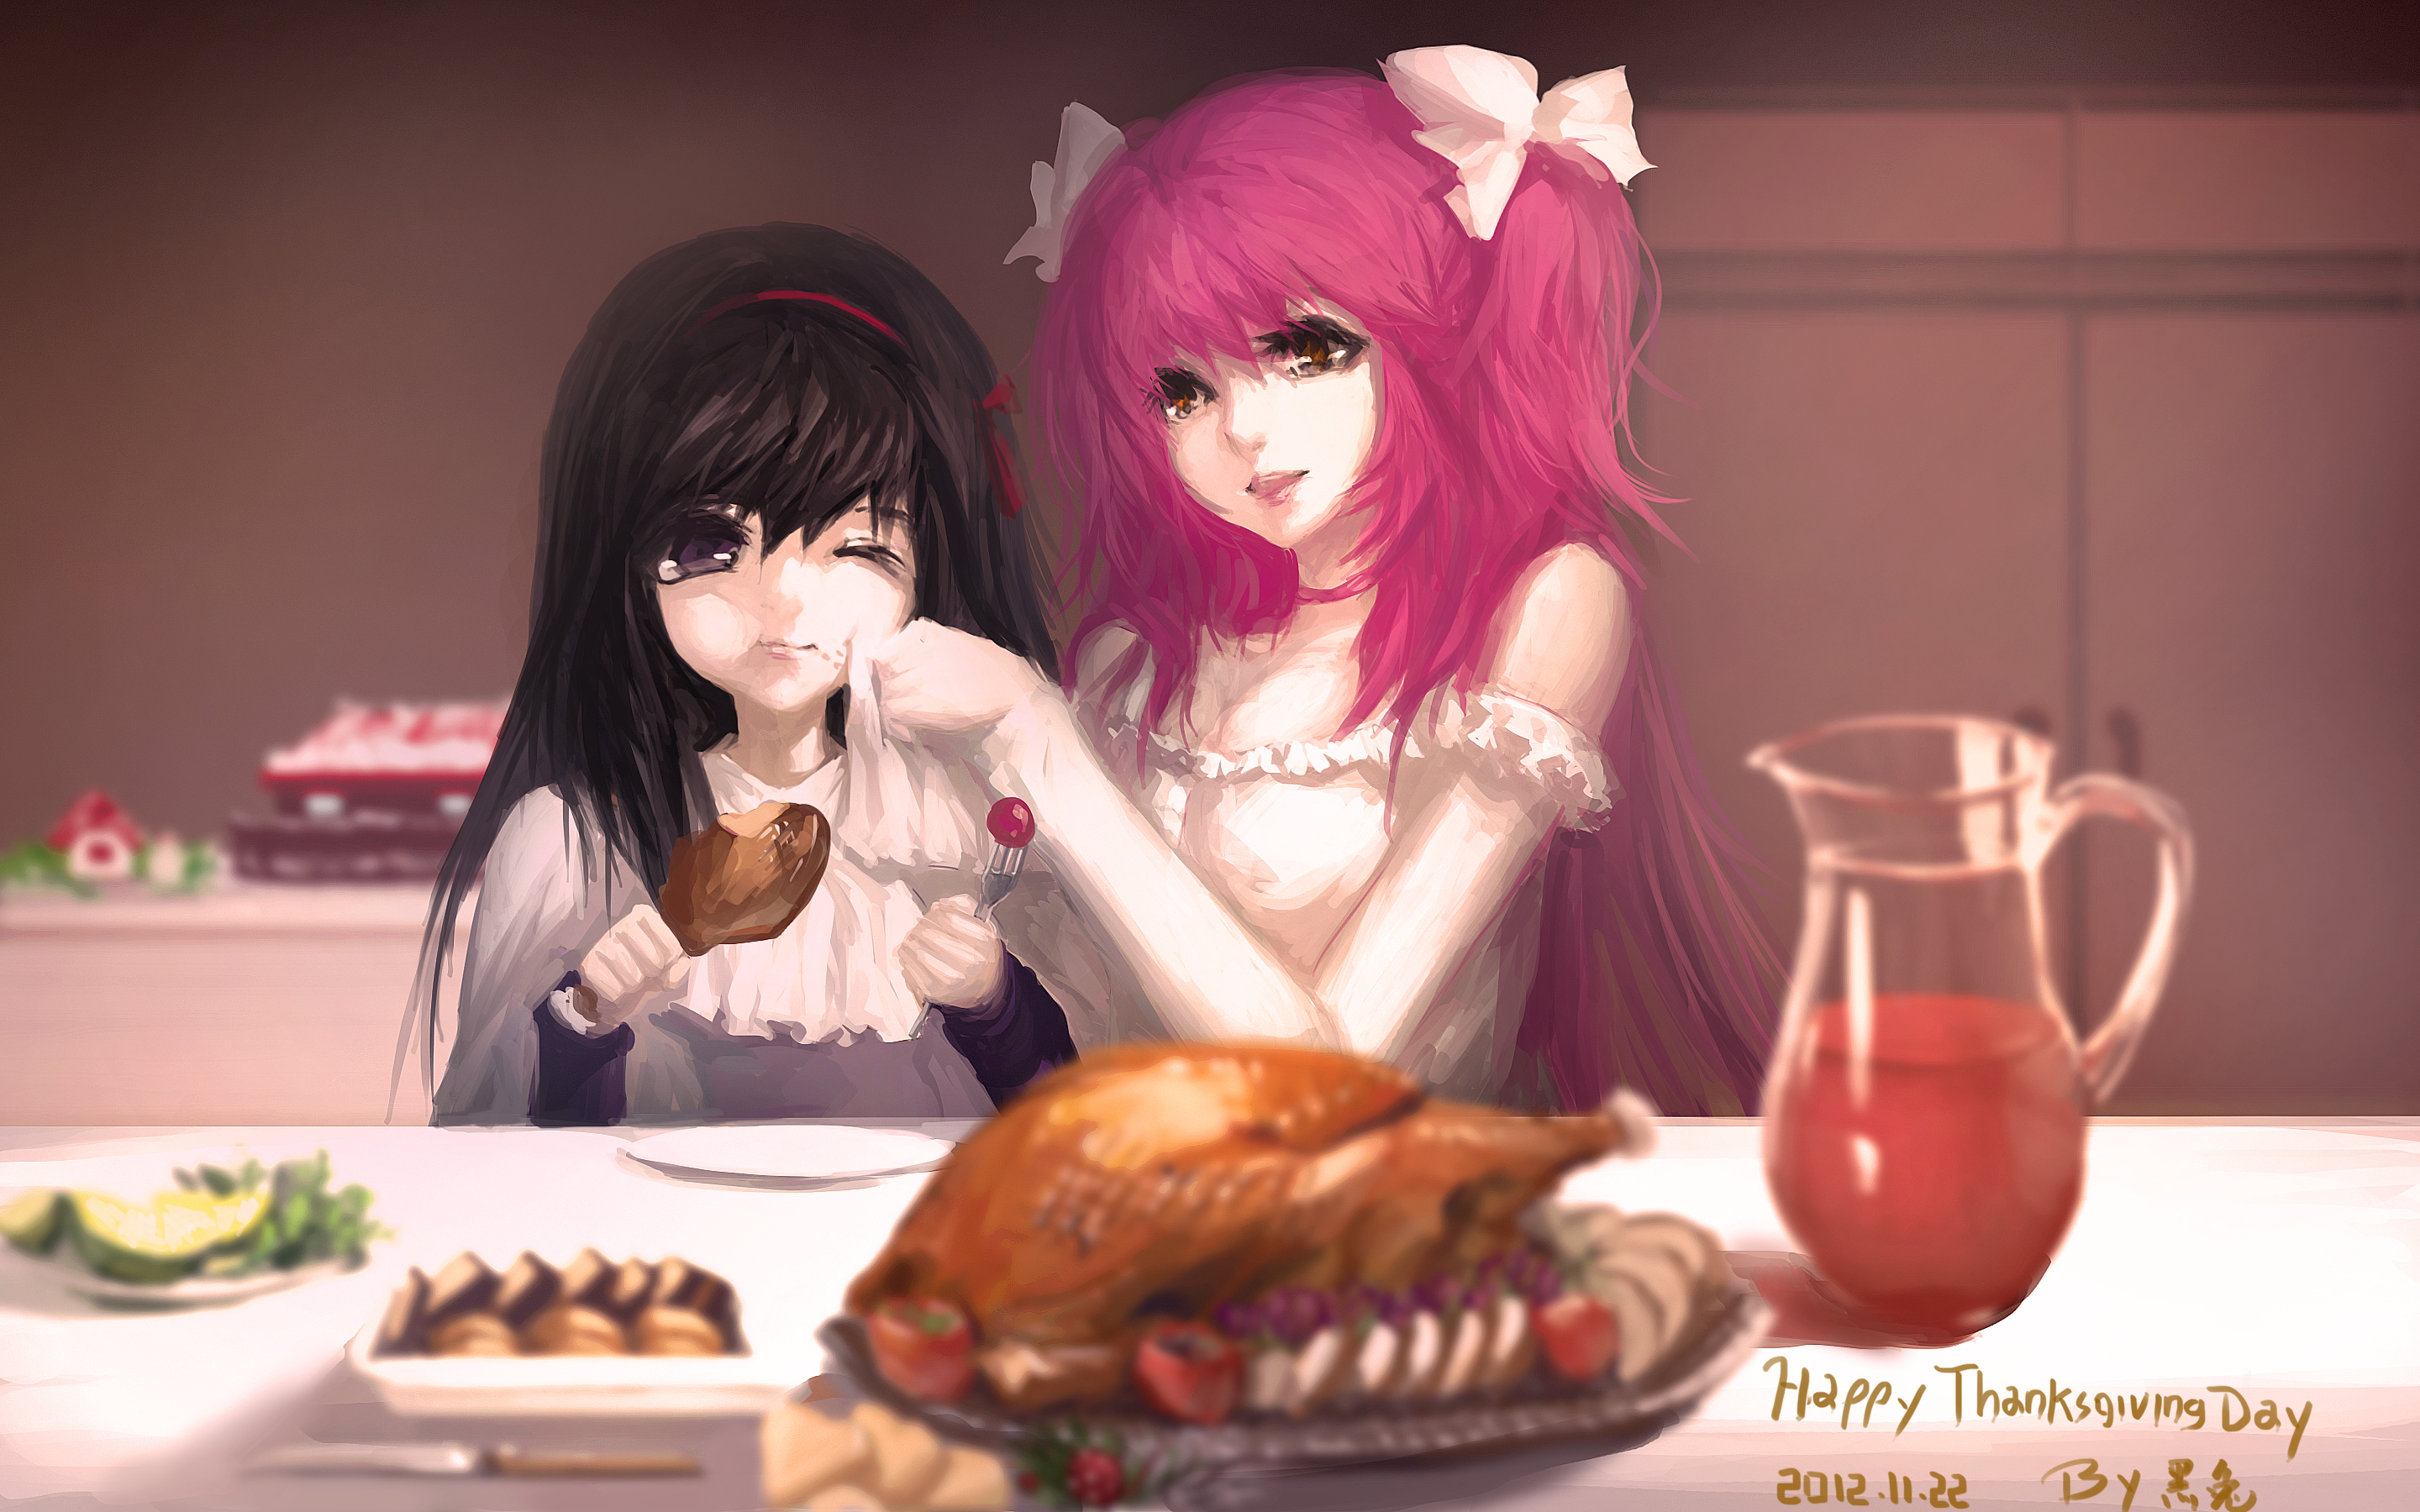 Anime Thanksgiving by SitaBrightwind on DeviantArt